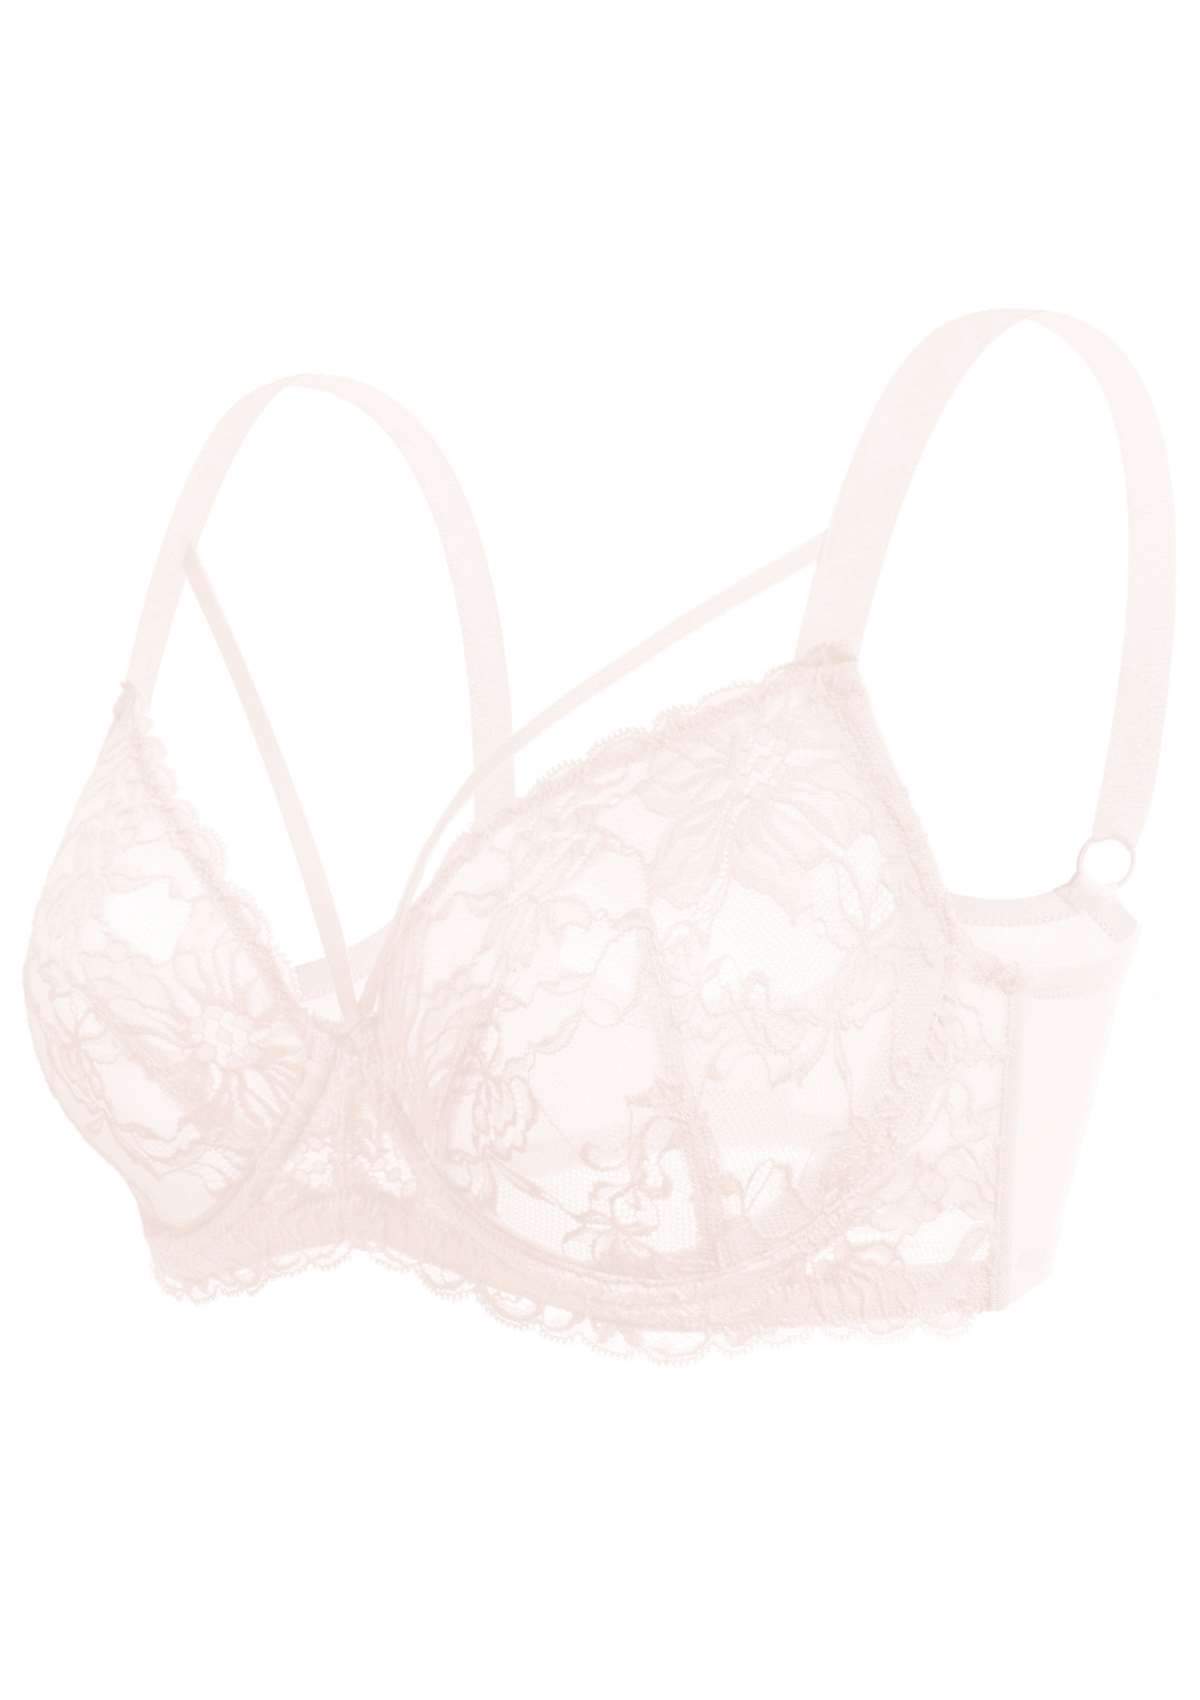 HSIA Pretty In Petals Underwire Lace Bra: No Padding, Full Cup Bra - Pink / 38 / DD/E